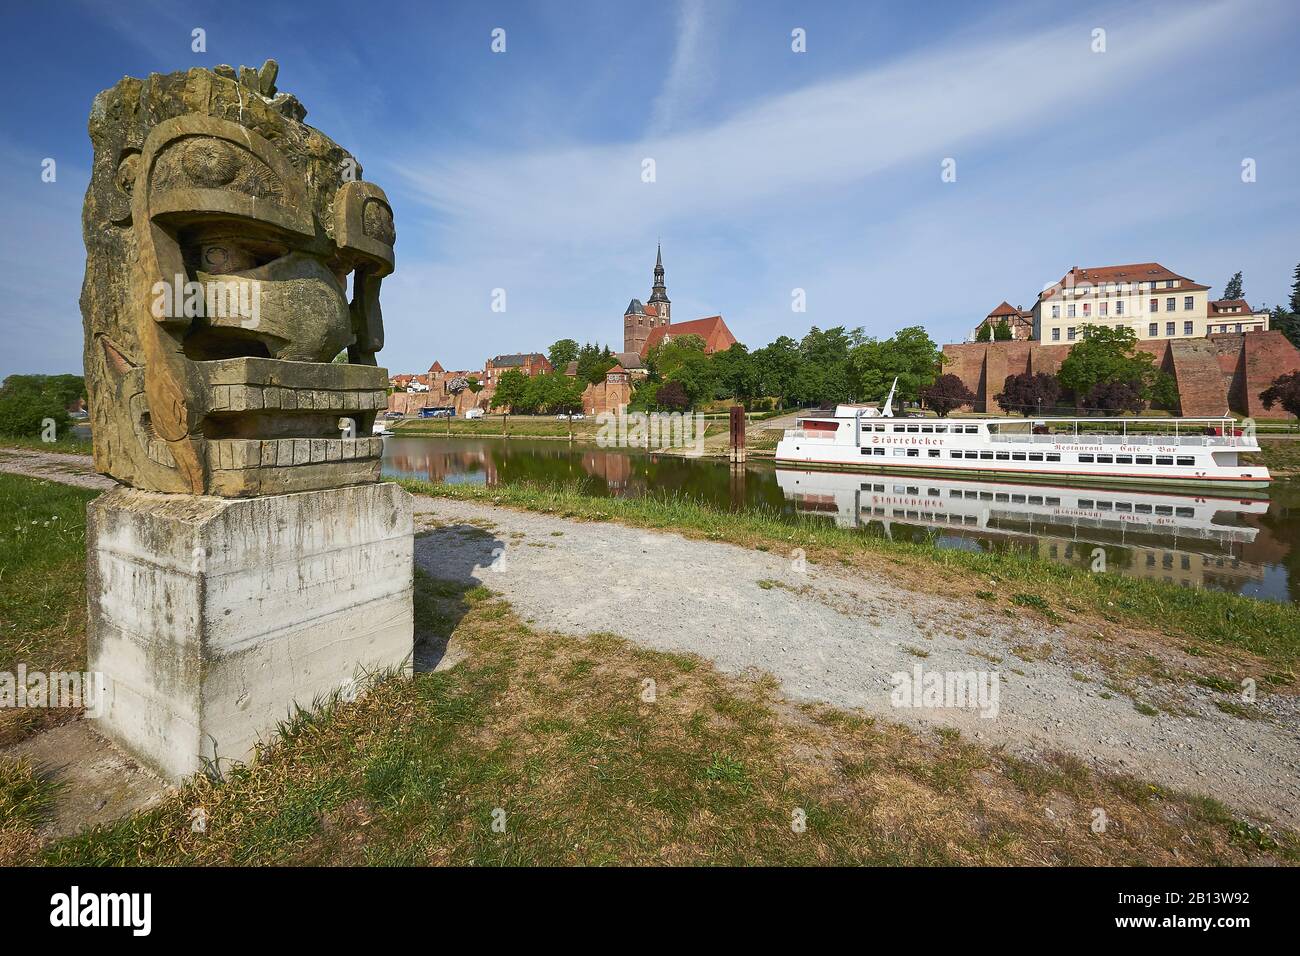 Elbwächter mit Blick auf die Stadt von Tangermünde, Sachsen-Anhalt, Deutschland Stockfoto